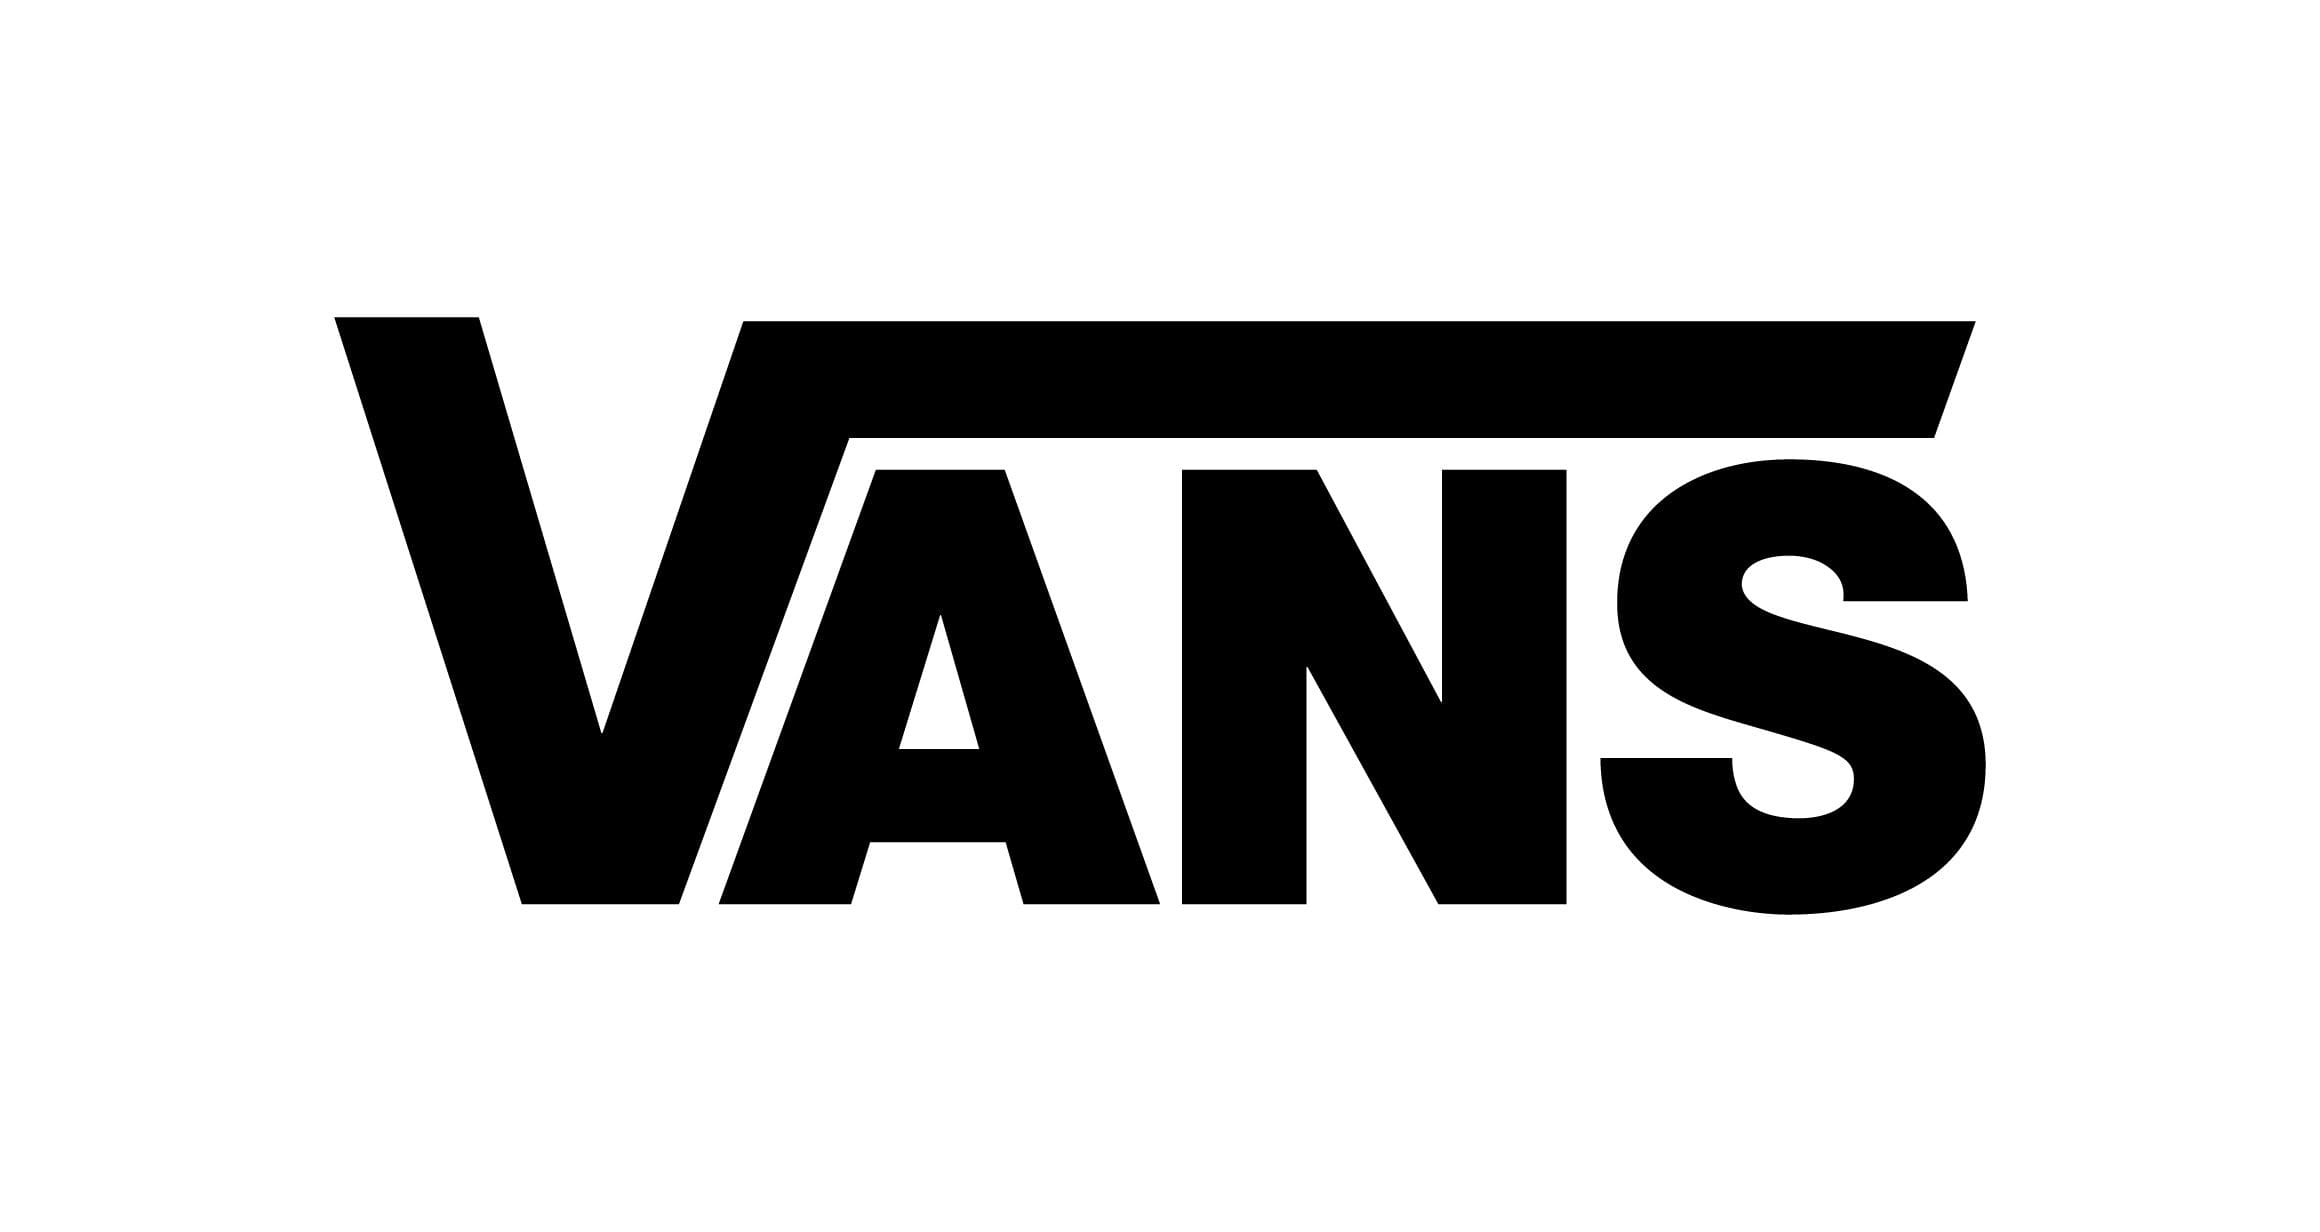 black and white vans logo